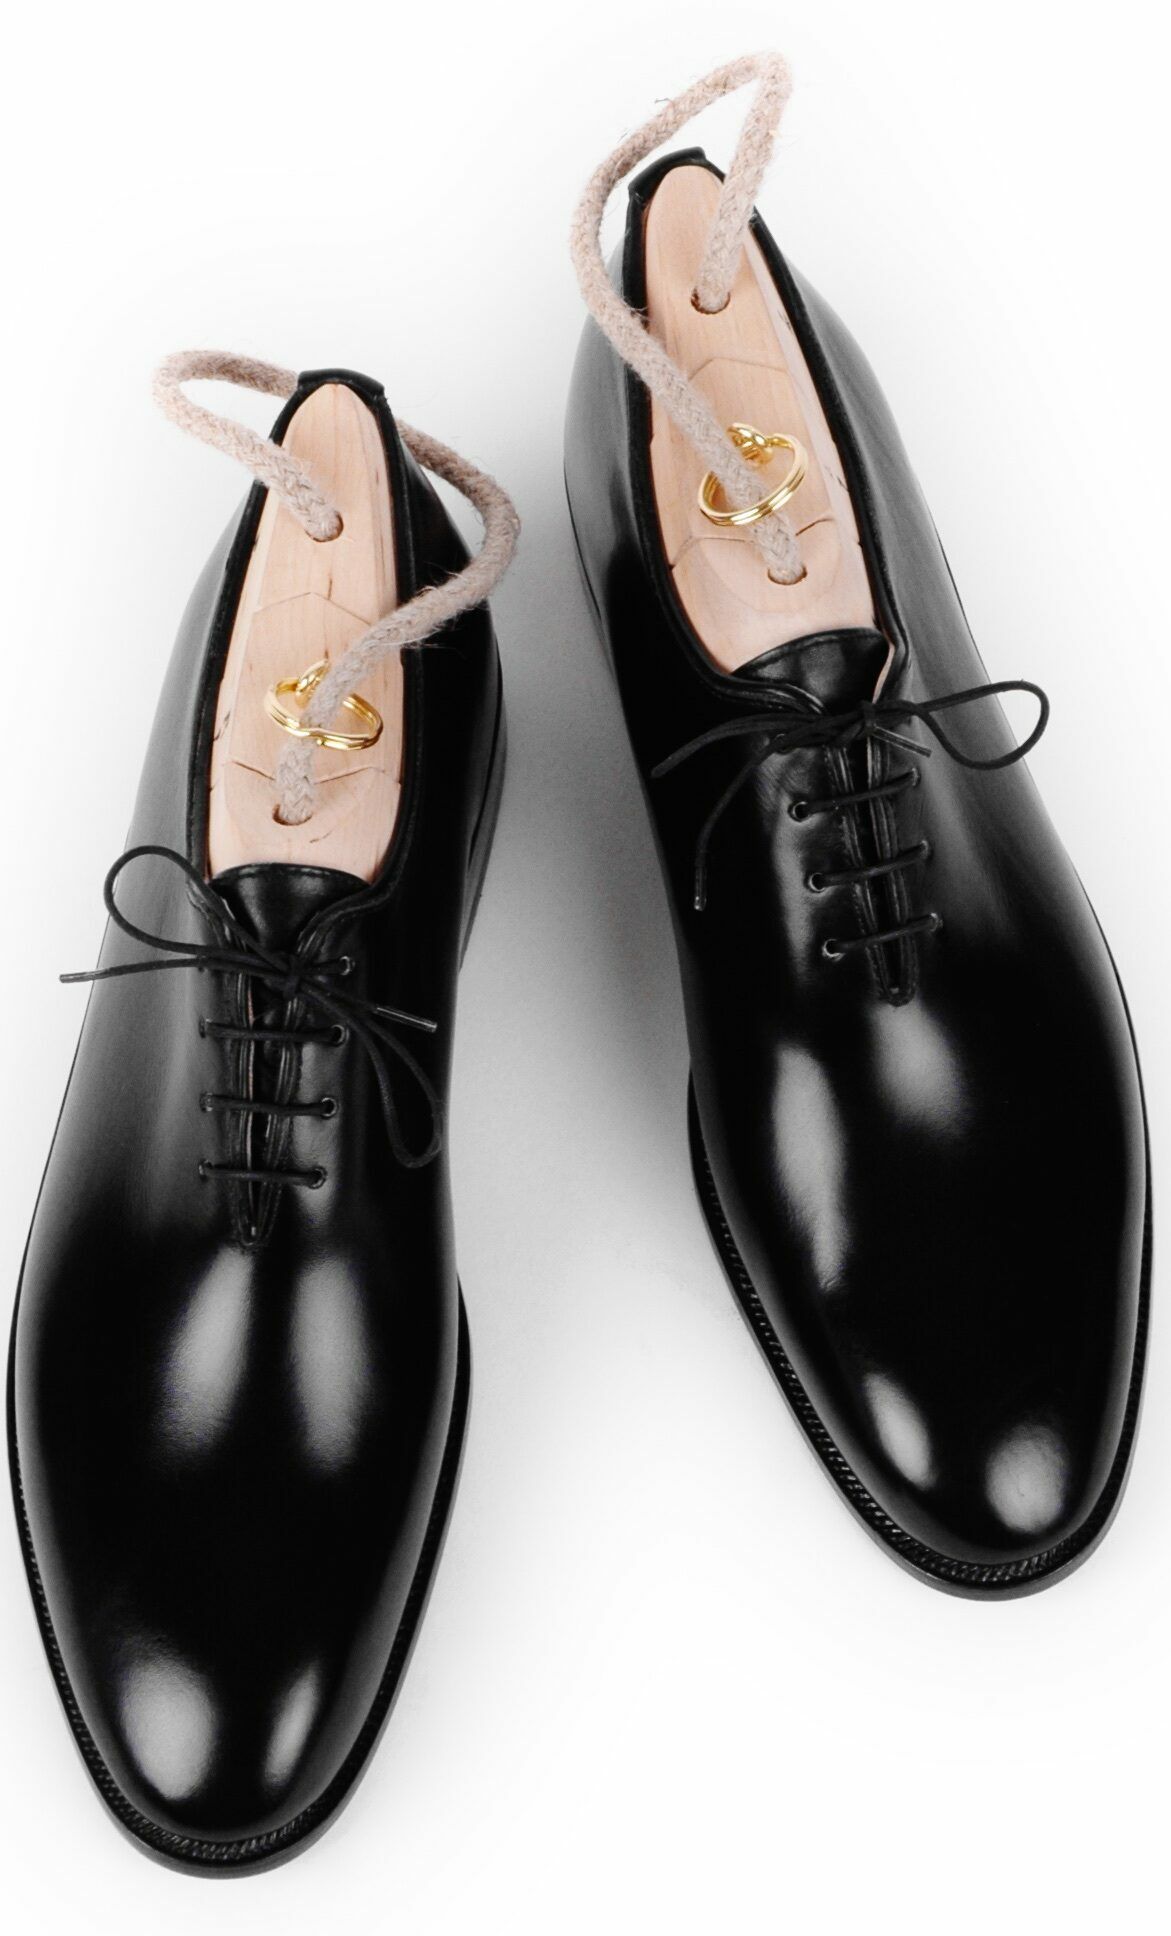 Schwarze Herrenschuhe mit Schuhspannern.